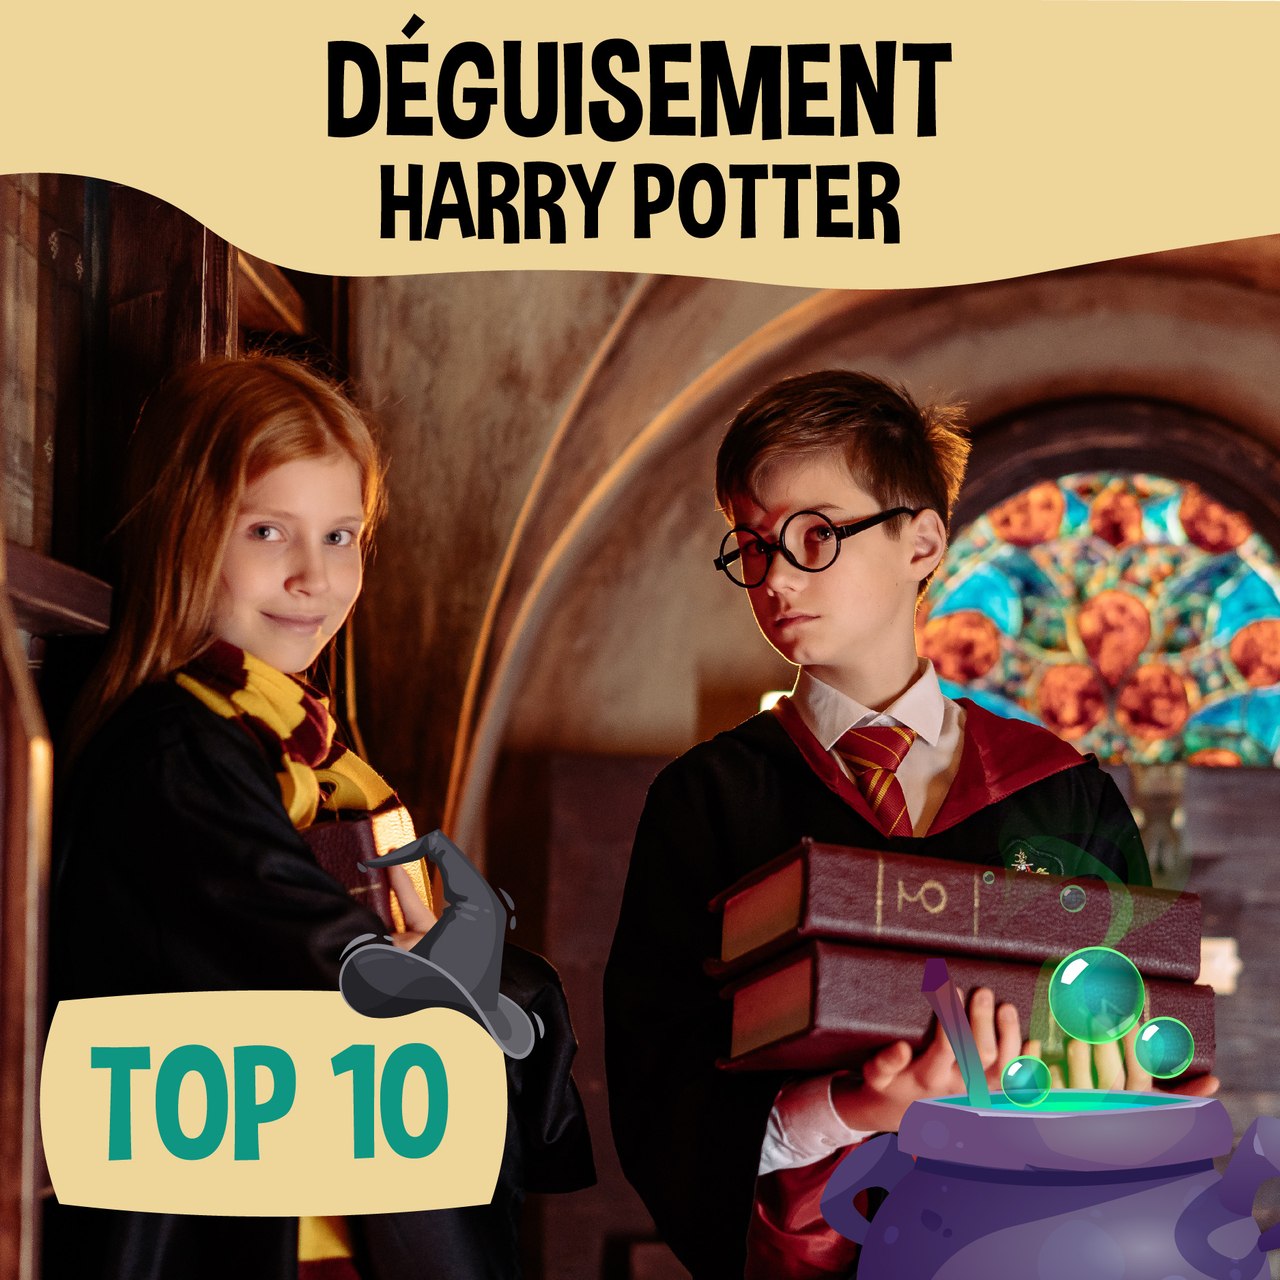 Top 10 Déguisement Harry Potter, Article